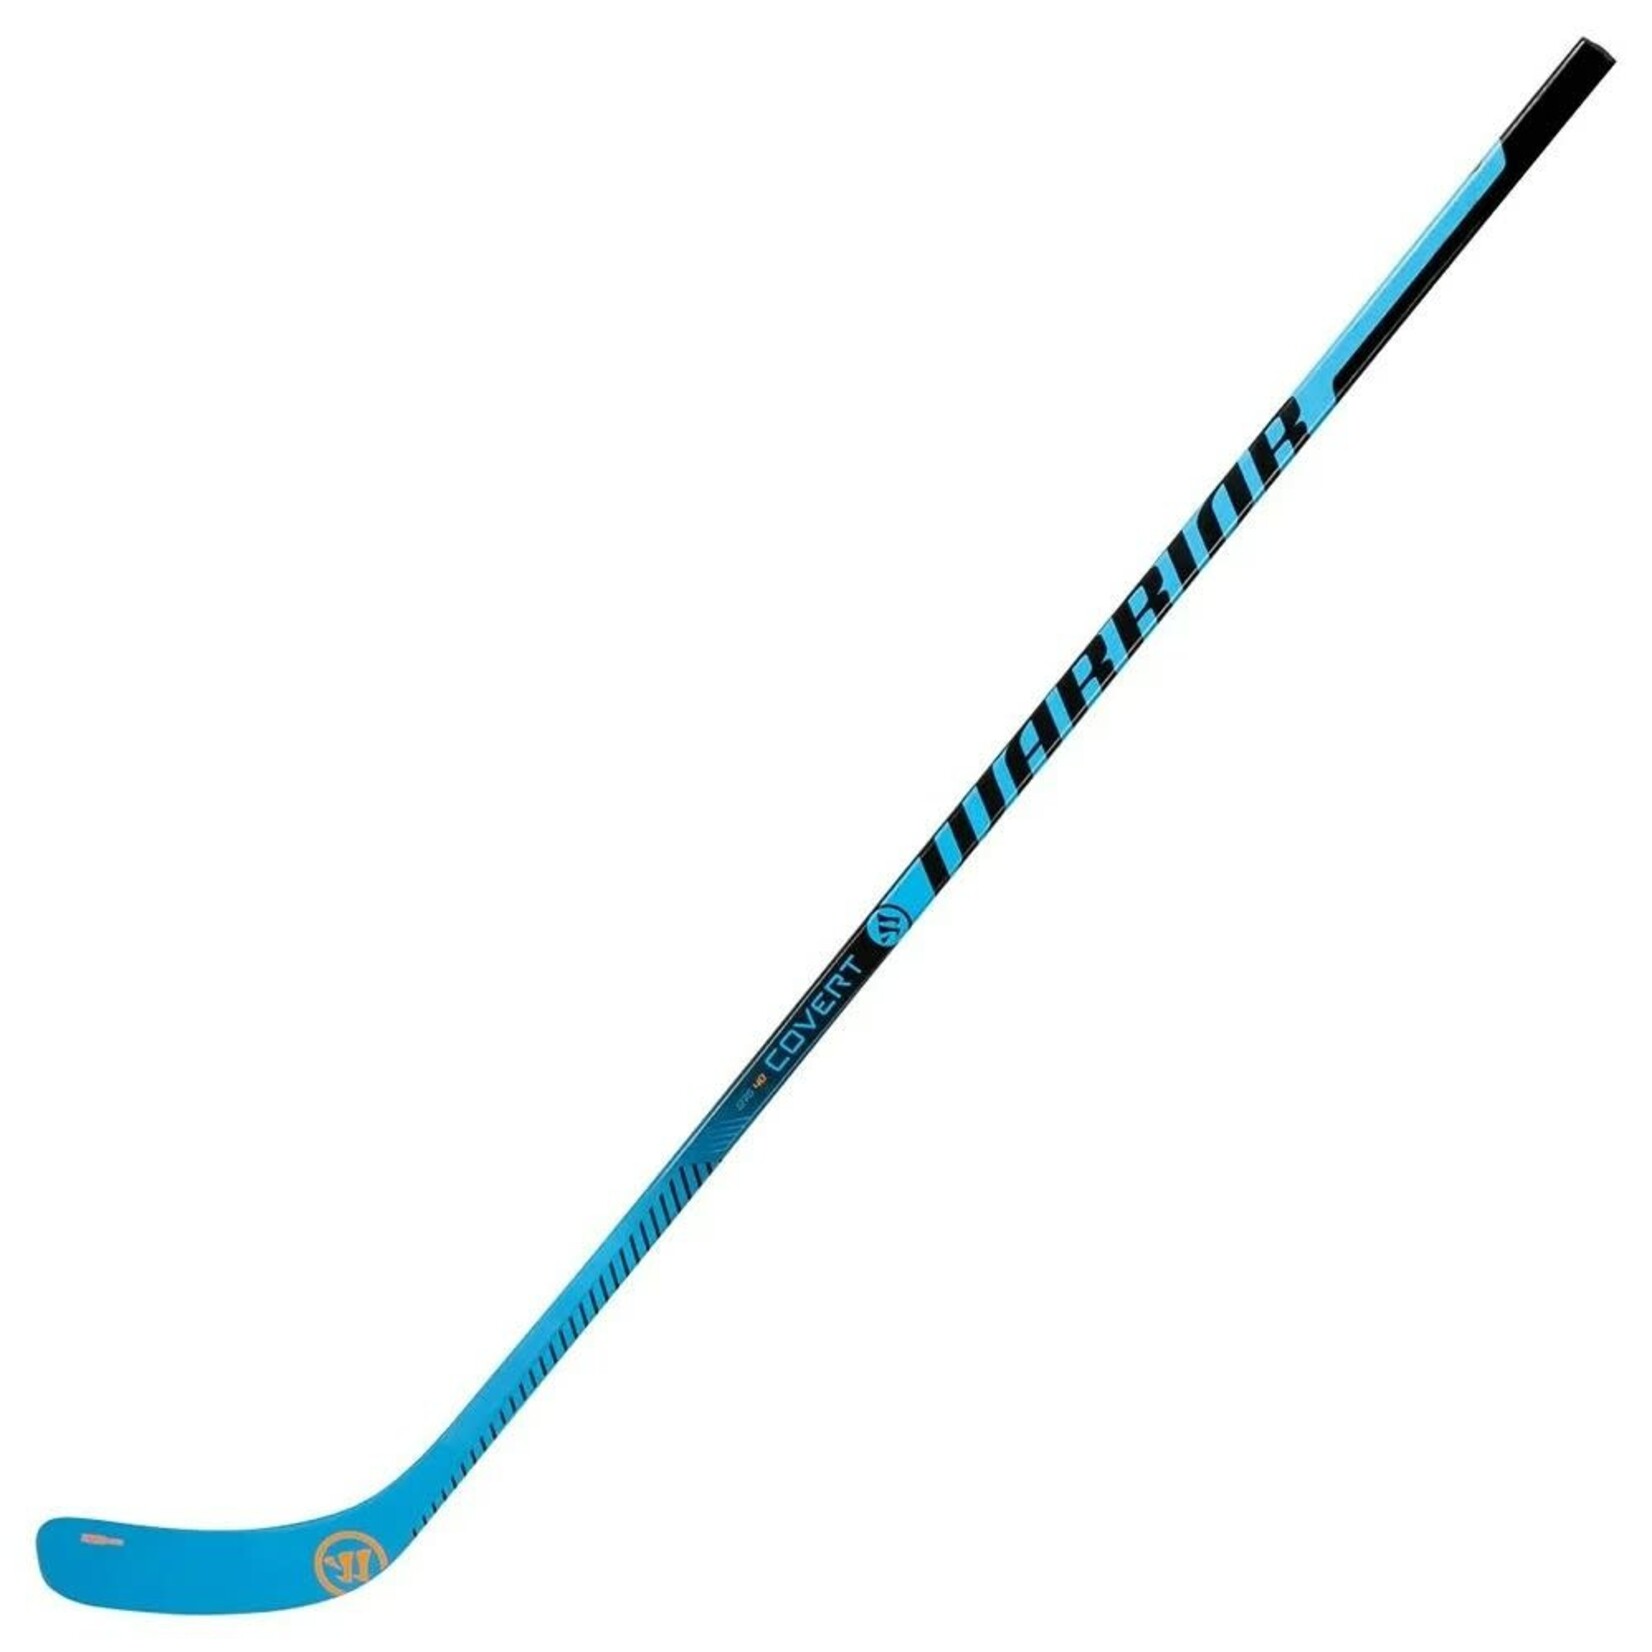 Warrior Warrior Hockey Stick, Covert QR5 40, Junior